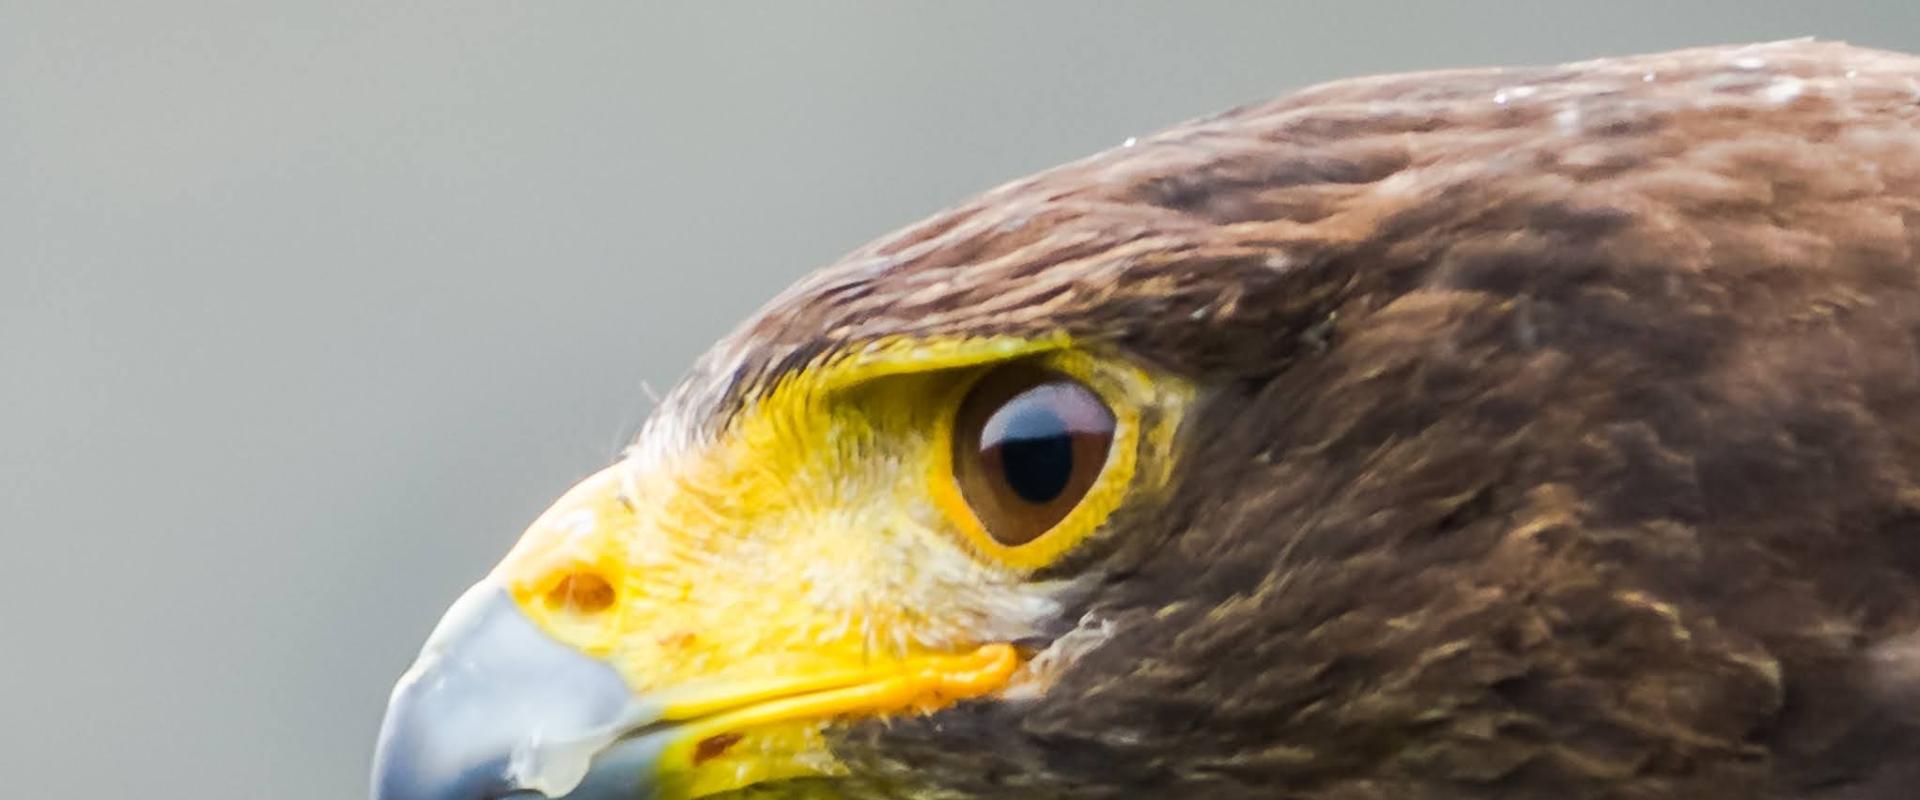 aderyn ysglyfaethus yn agos / bird of prey close-up